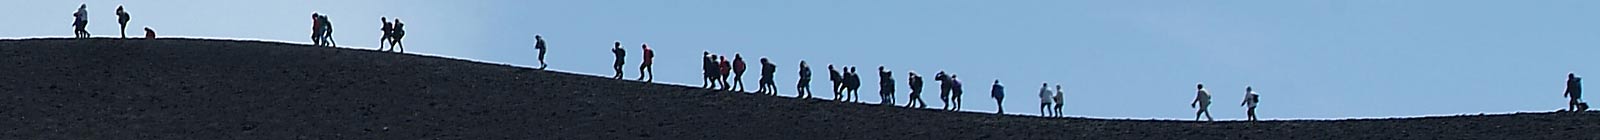 People on Mount Entna - Banner